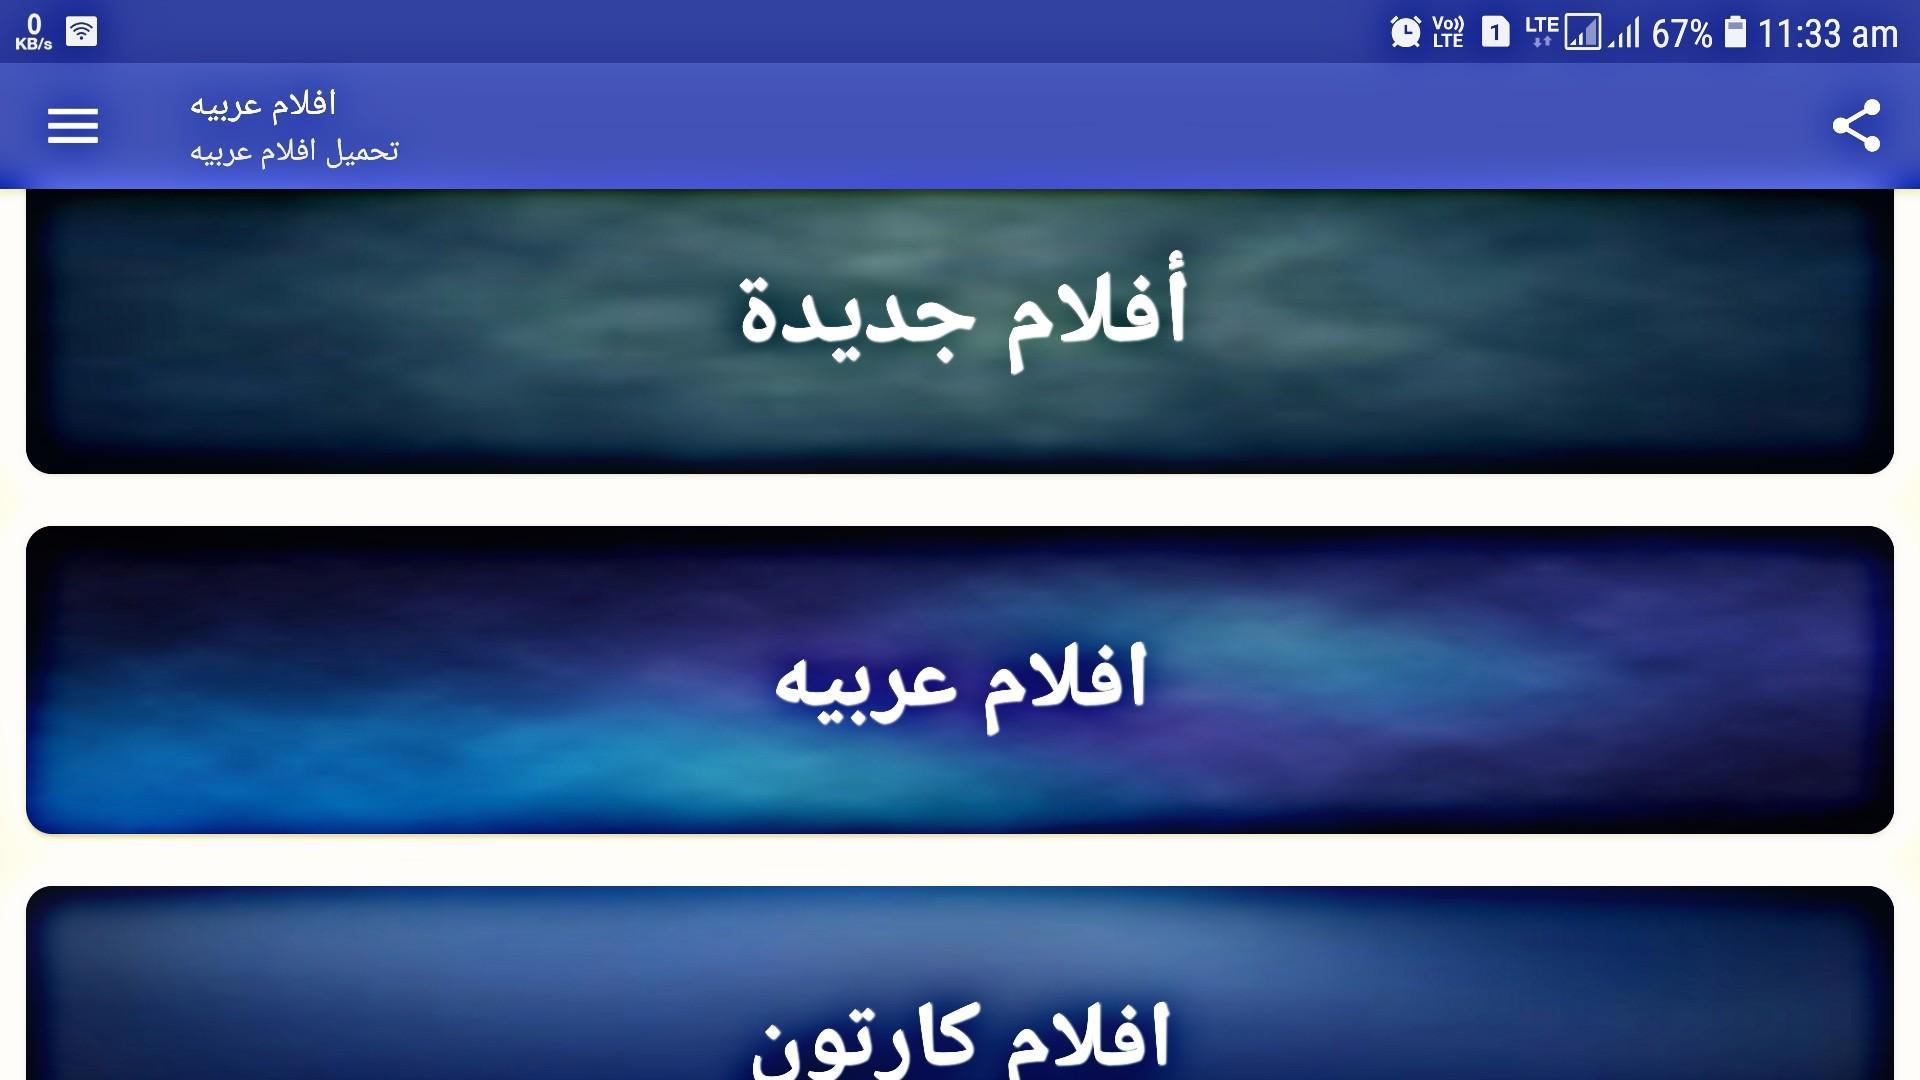 تحميل فيلم كامل مجاني الحركة كرتون عربي For Android Apk